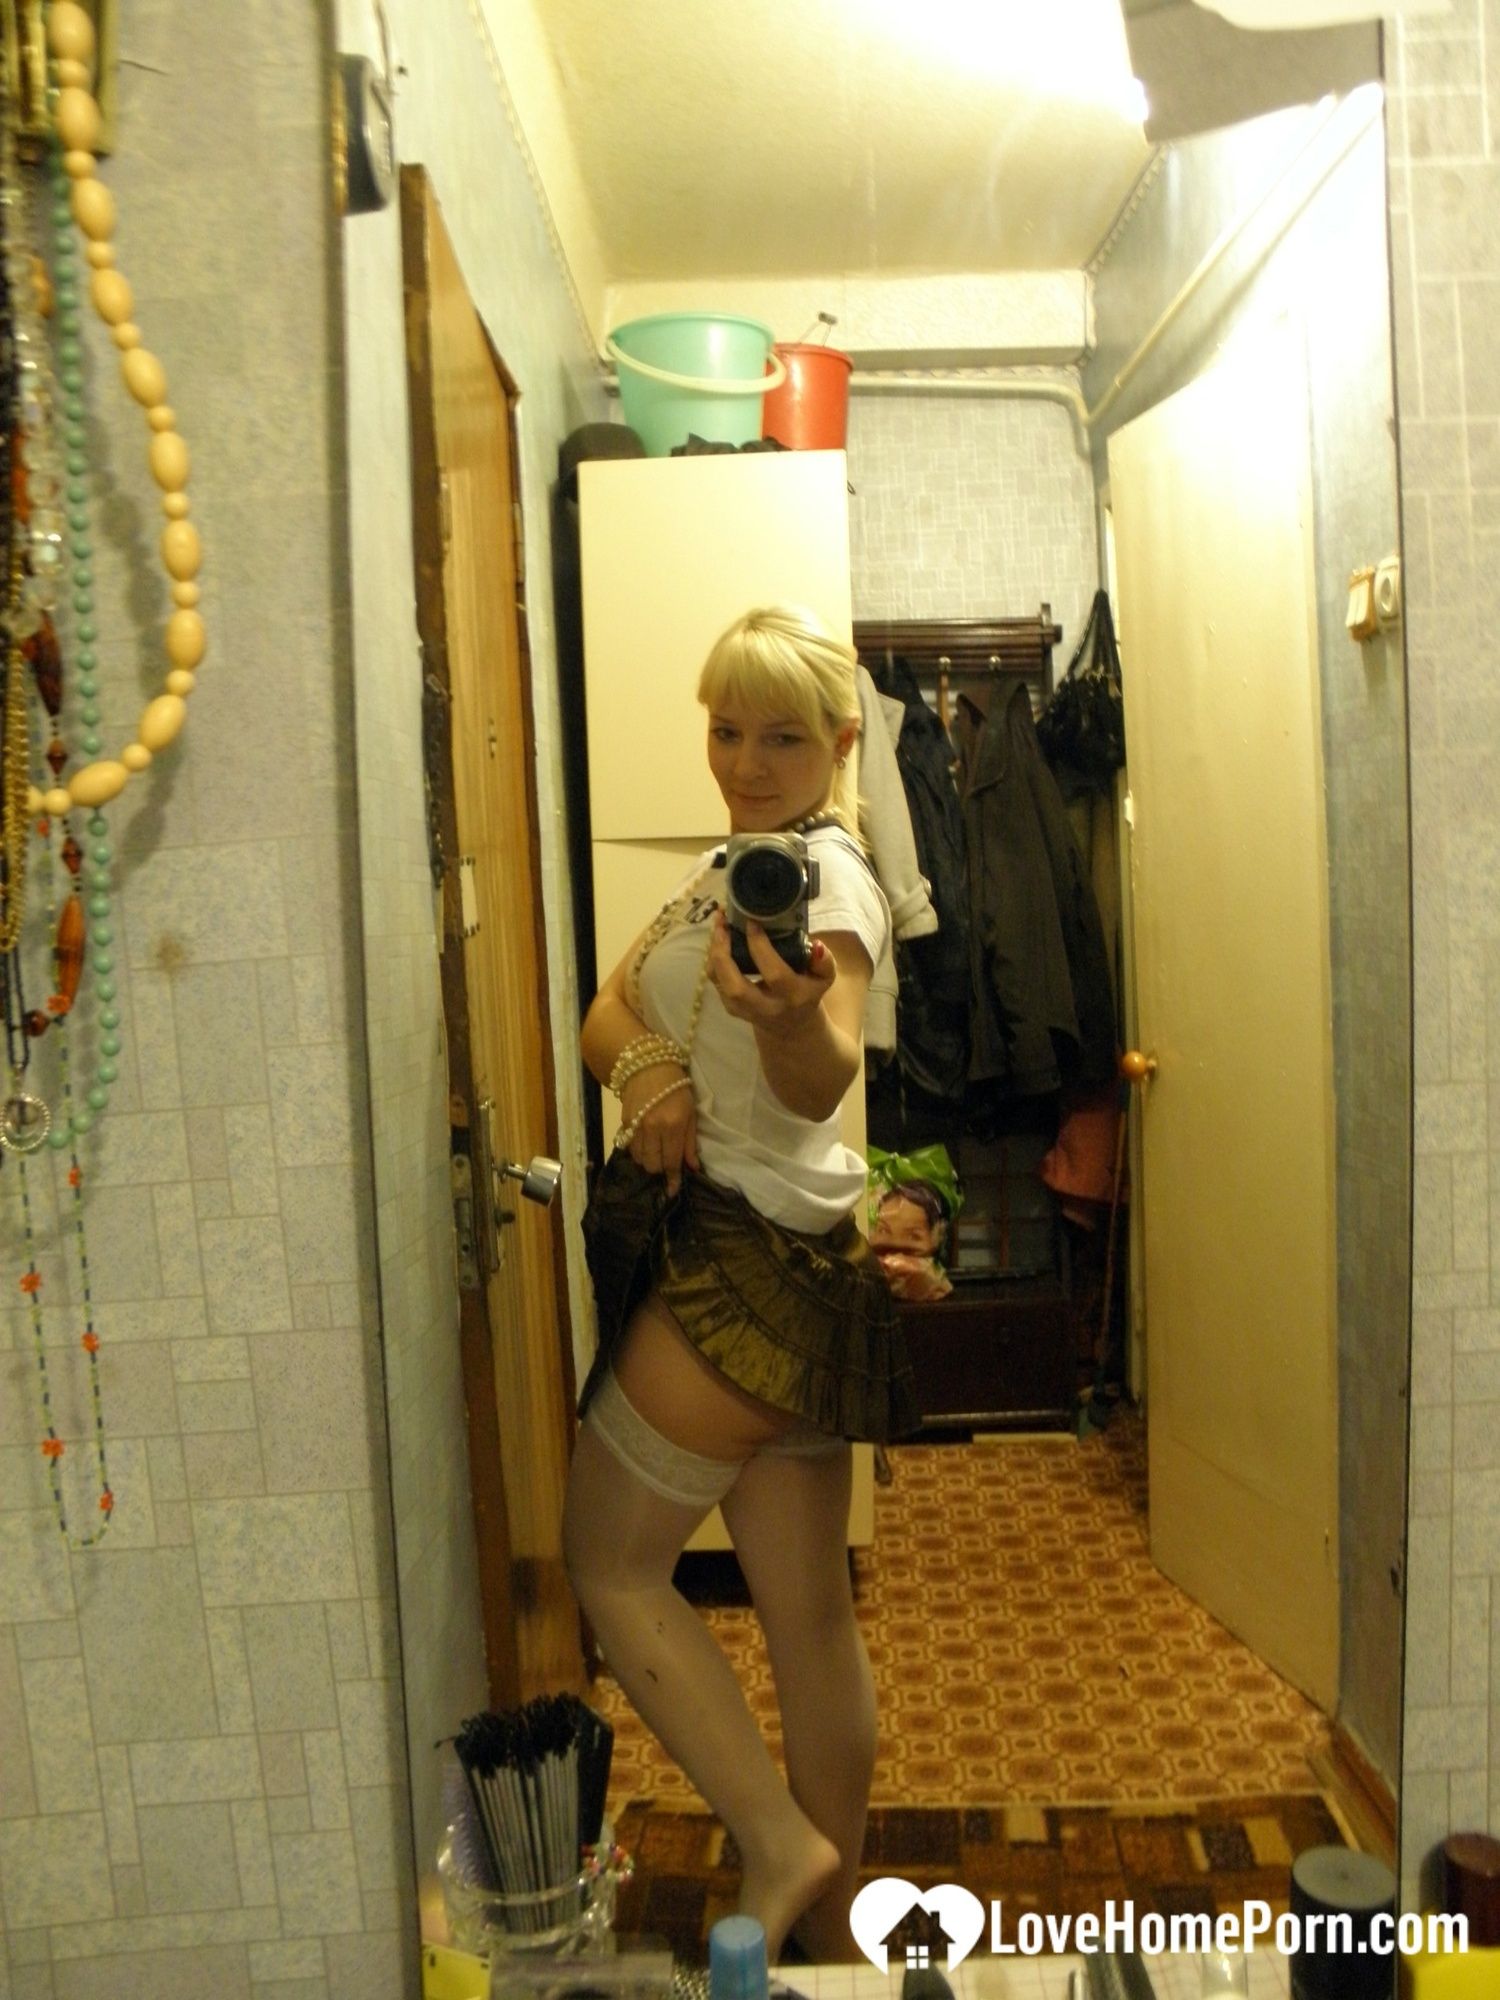 Aroused blonde in stockings taking naughty selfies #6